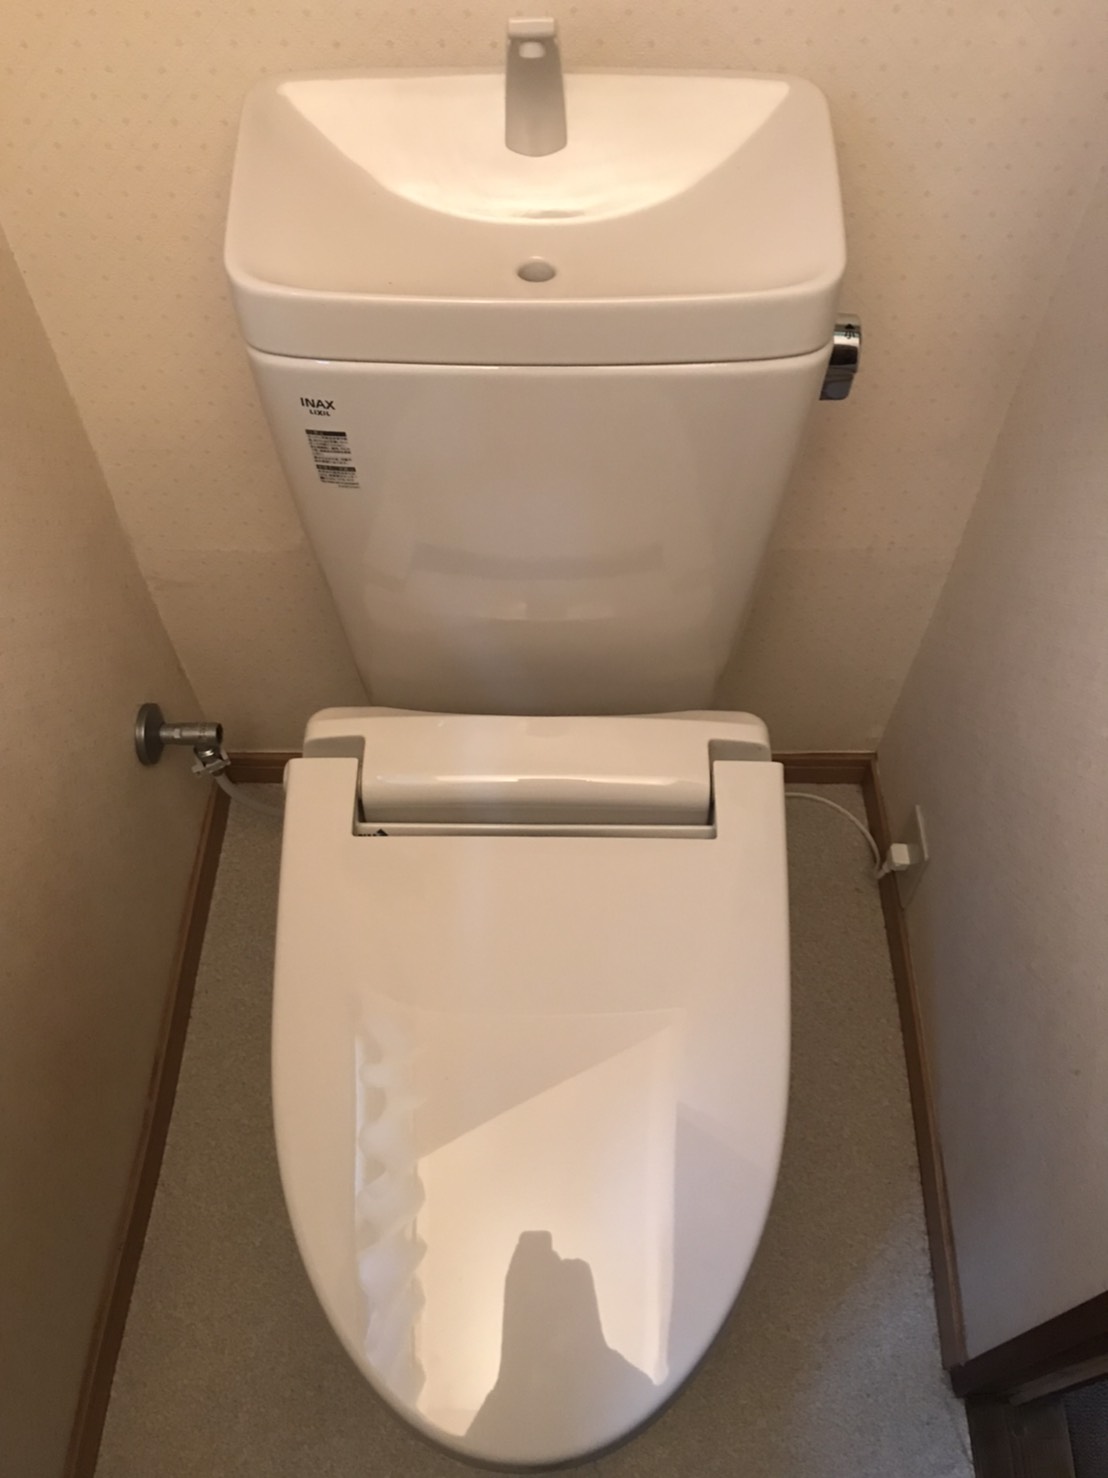 【東京都八王子市子安町】トイレと床のつなぎ目のところから水がにじんでいる。トイレ交換 【公式】水漏れ・つまりを